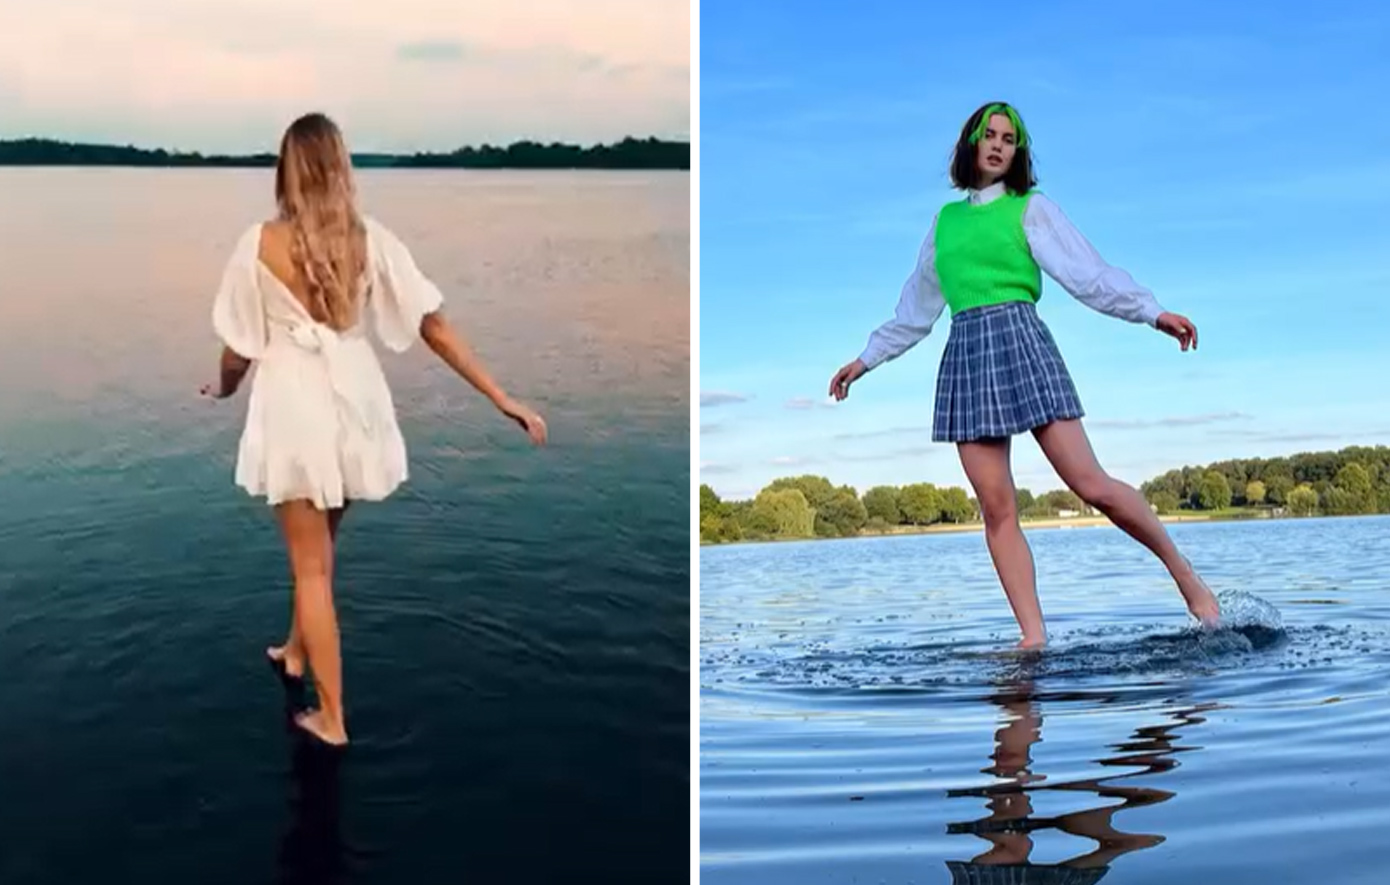 Πώς βγαίνει μια επική φωτογραφία στην οποία μοιάζεις να περπατάς στο νερό